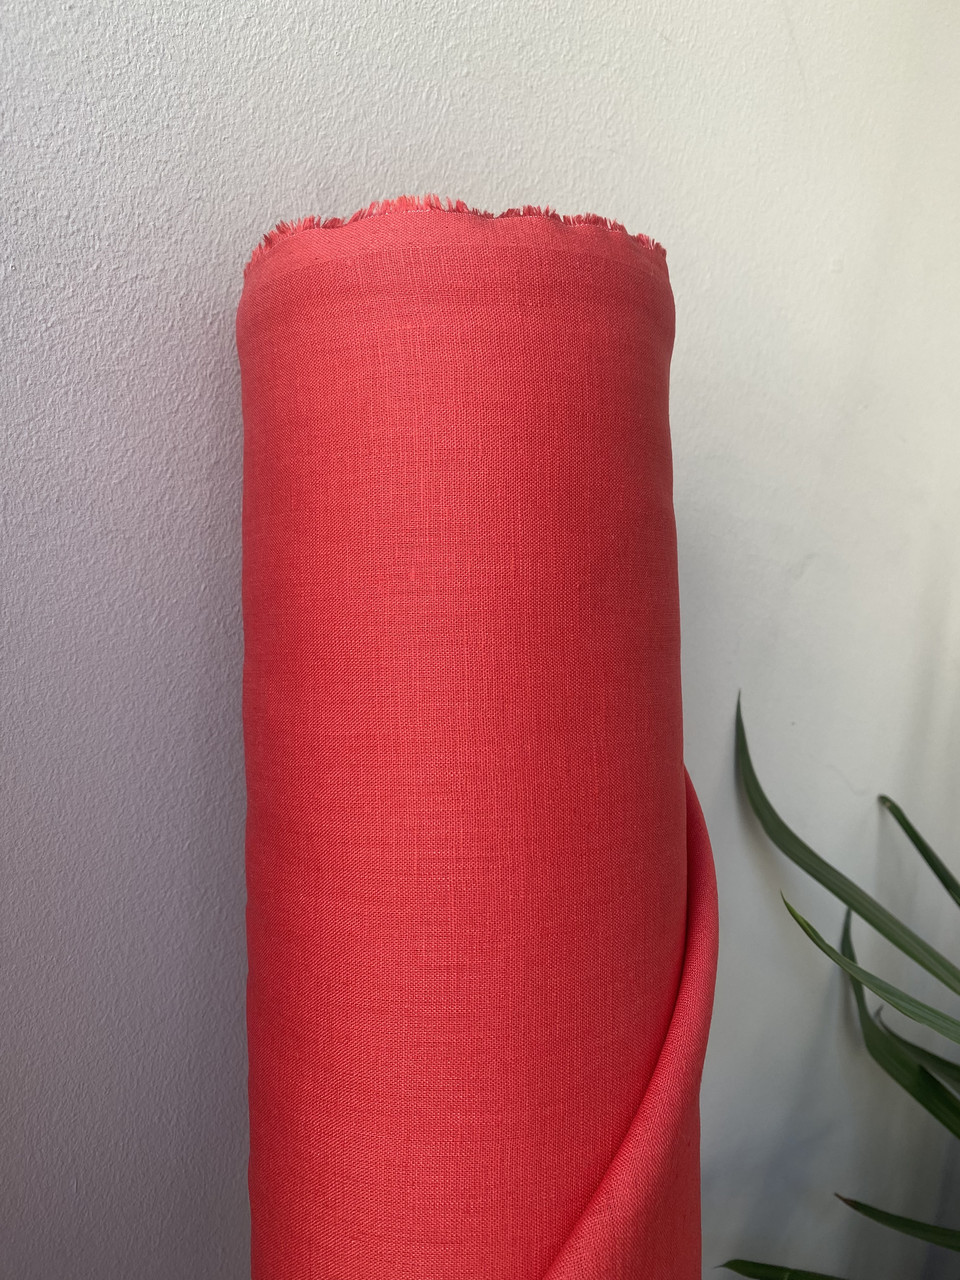 Червона лляна сорочково-платтєва тканина, 100% льон, колір 181/1309